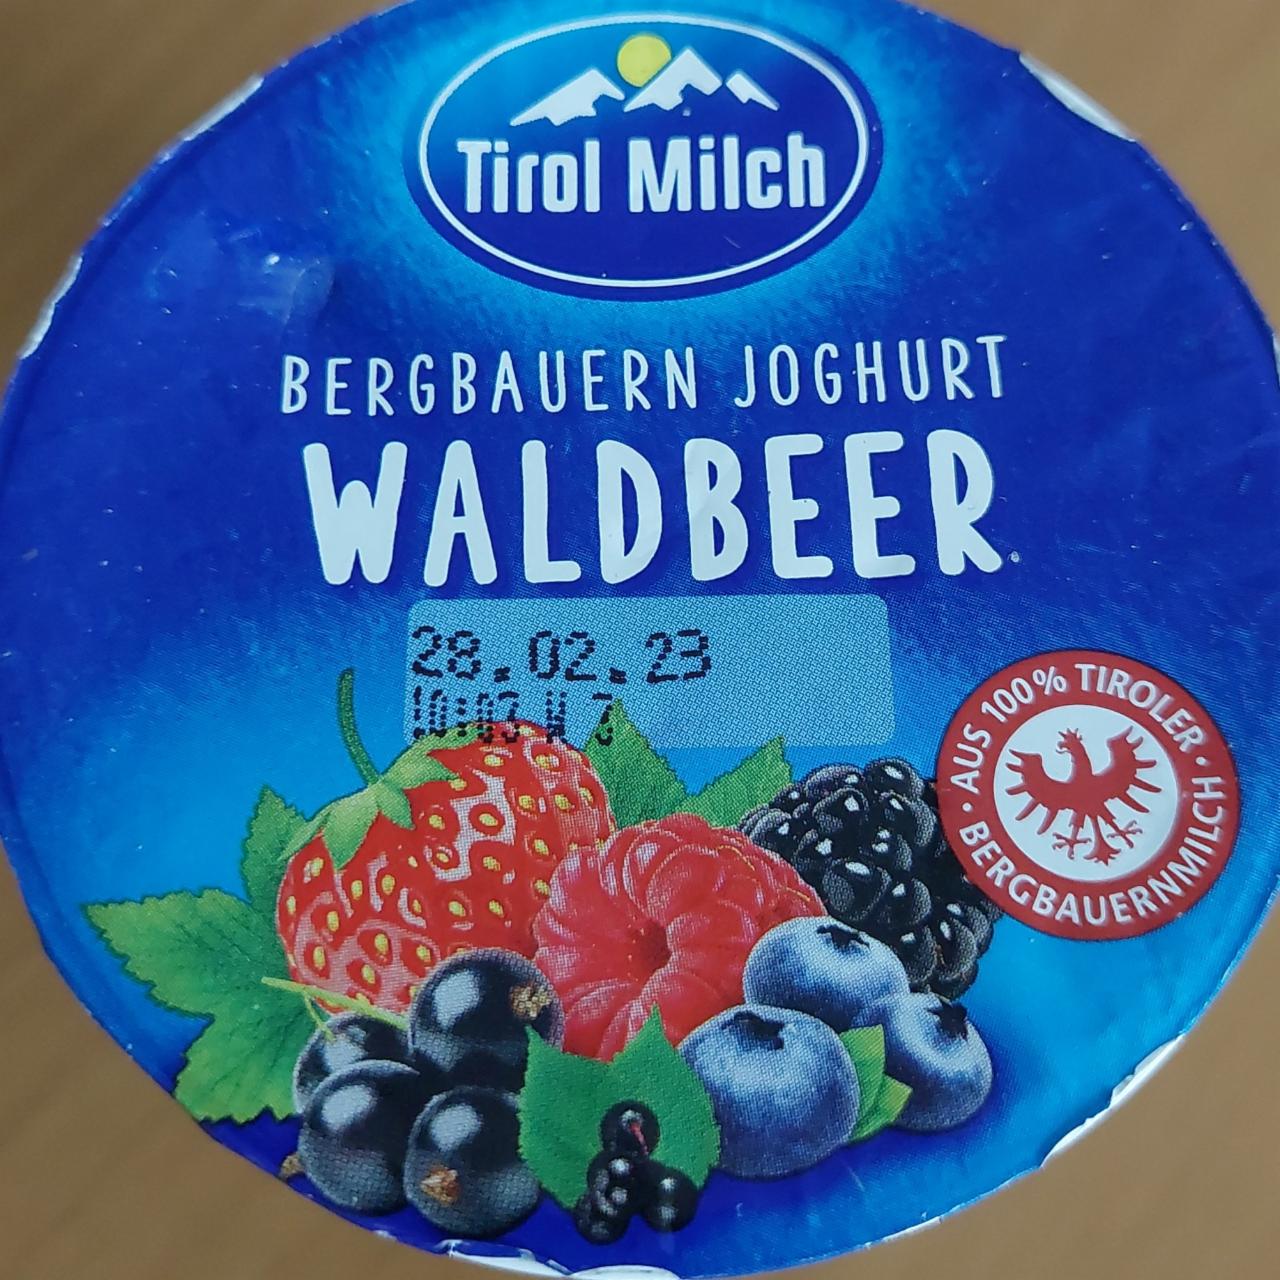 Fotografie - Joghurt Bergbauern Waldbeer Tirol Milch